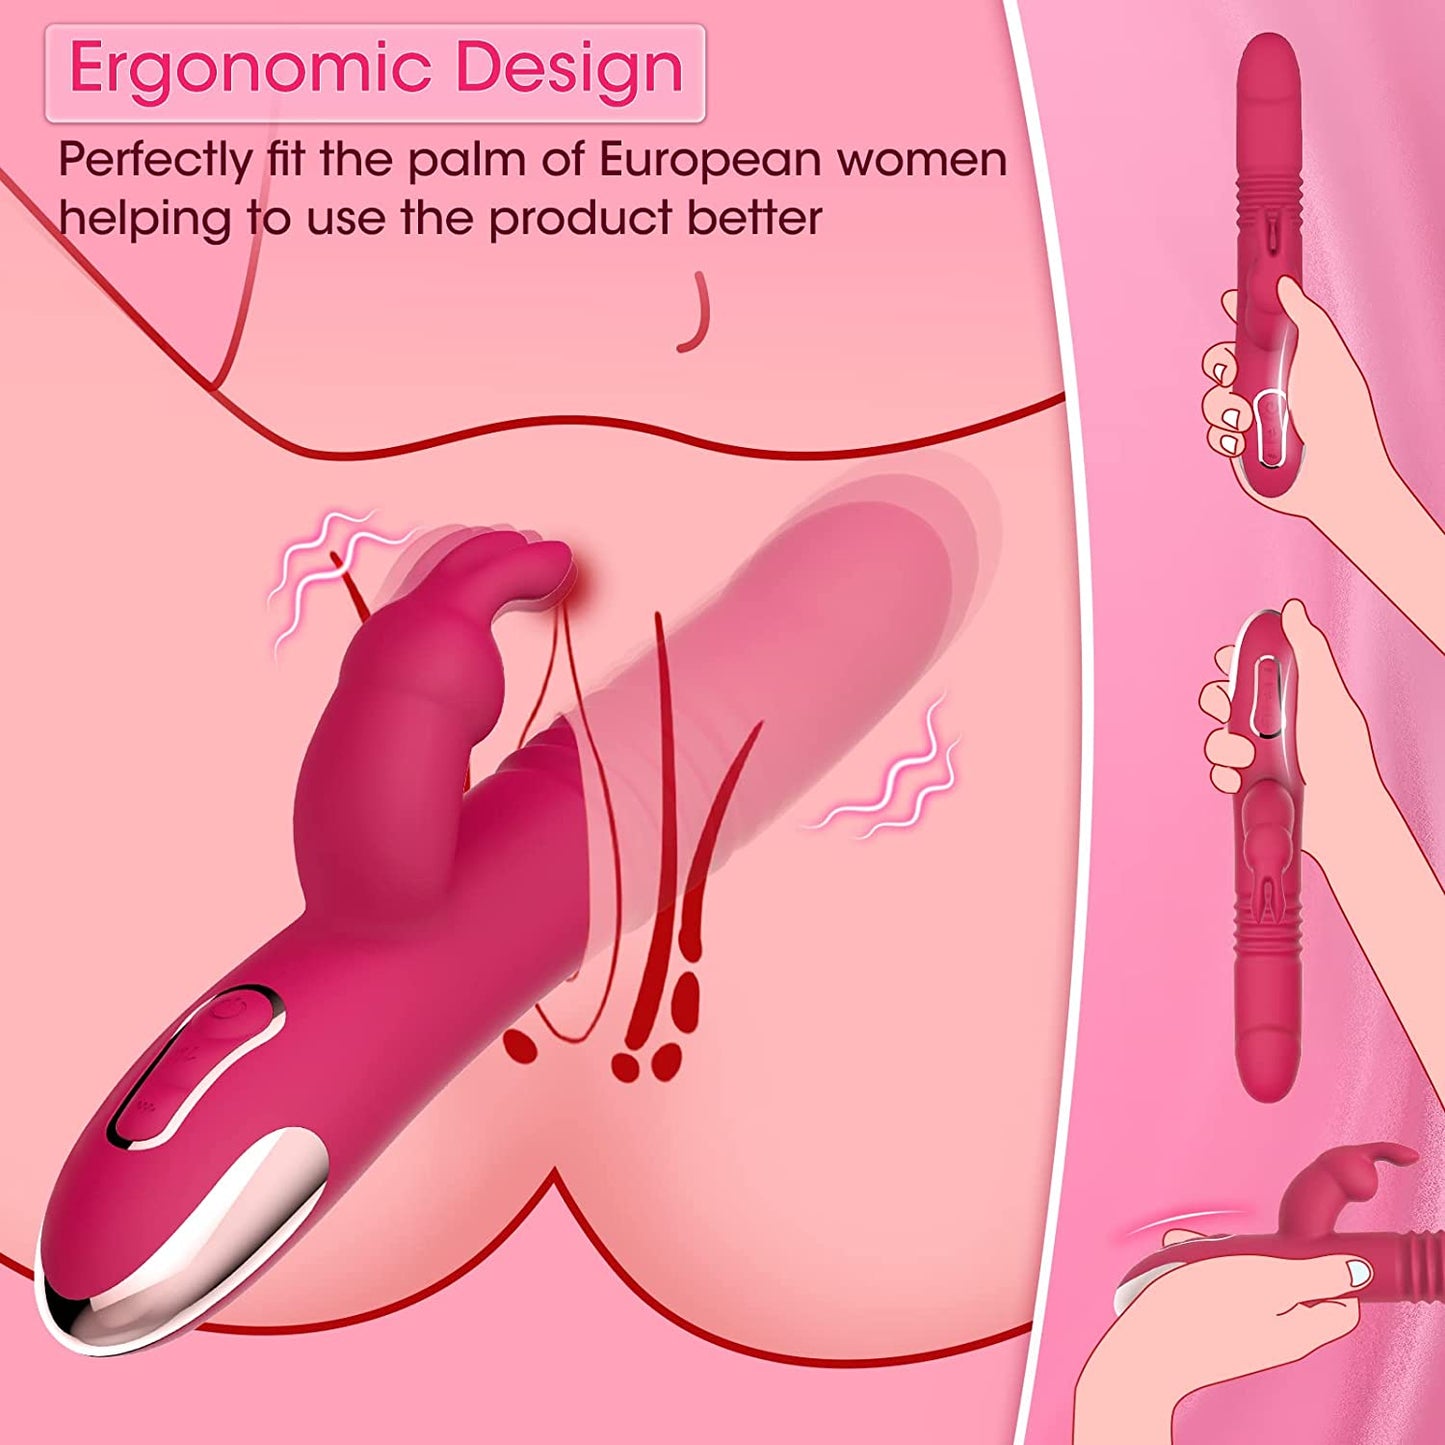 Vibratoren rabbit für Sie Klitoris und G-punkt mit Stoßfunktion